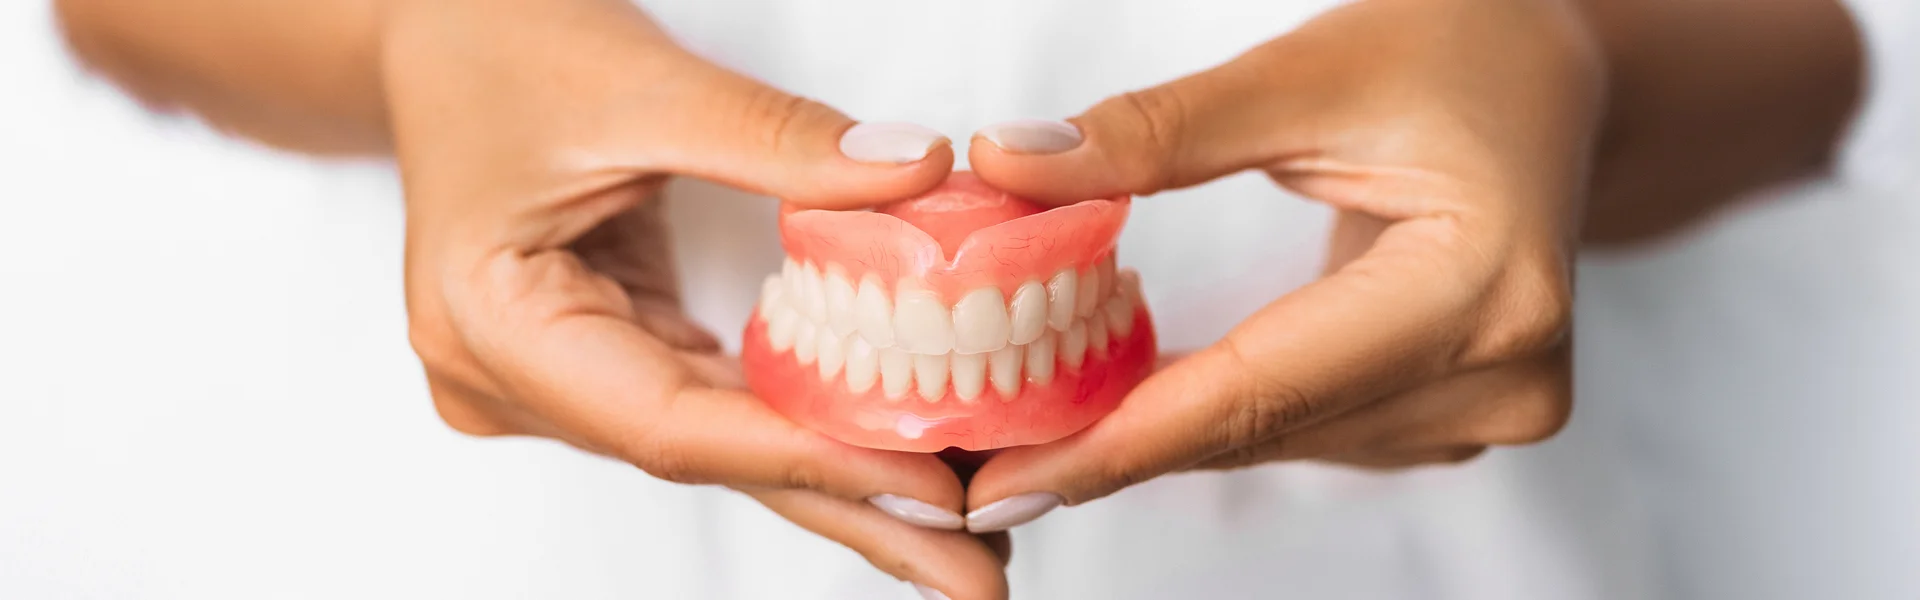 Dental Implants or Dentures: Making an Informed Decision